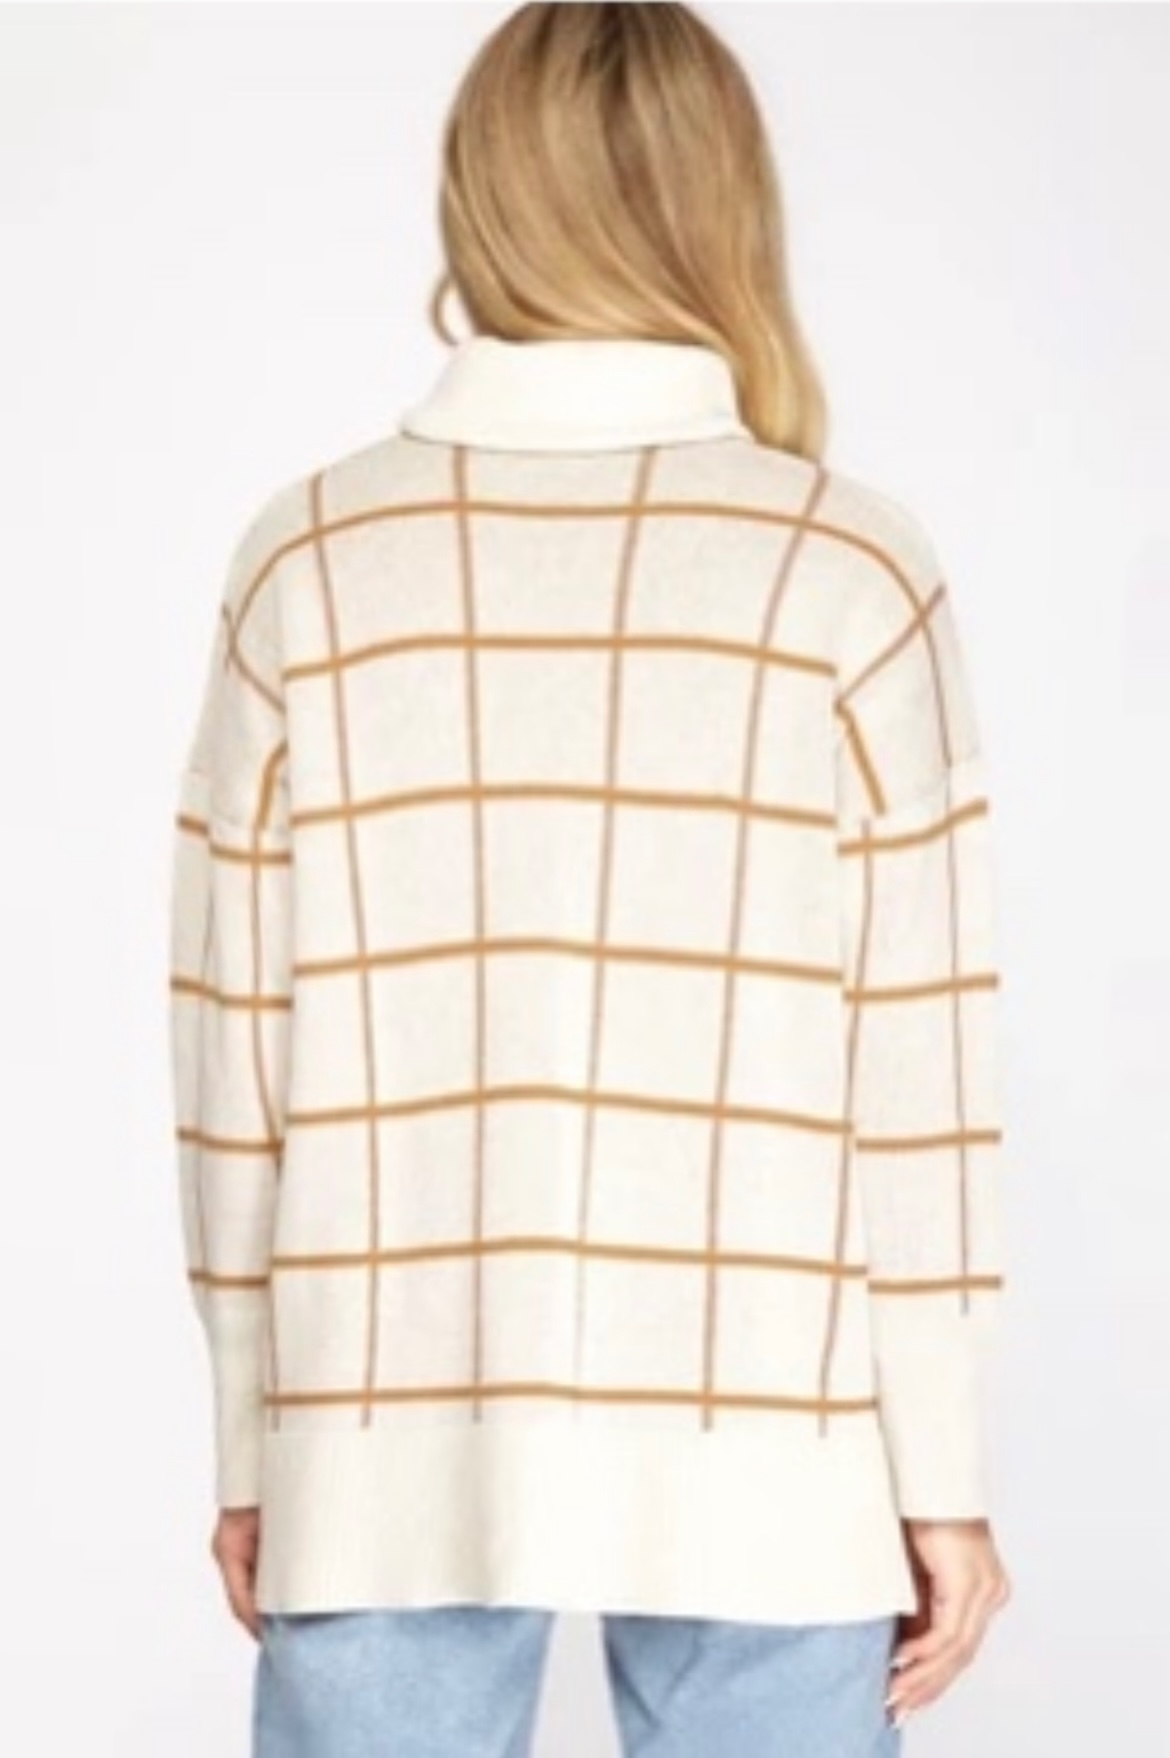 Ivory/Camel Grid Turtleneck Sweater – ON SALE !